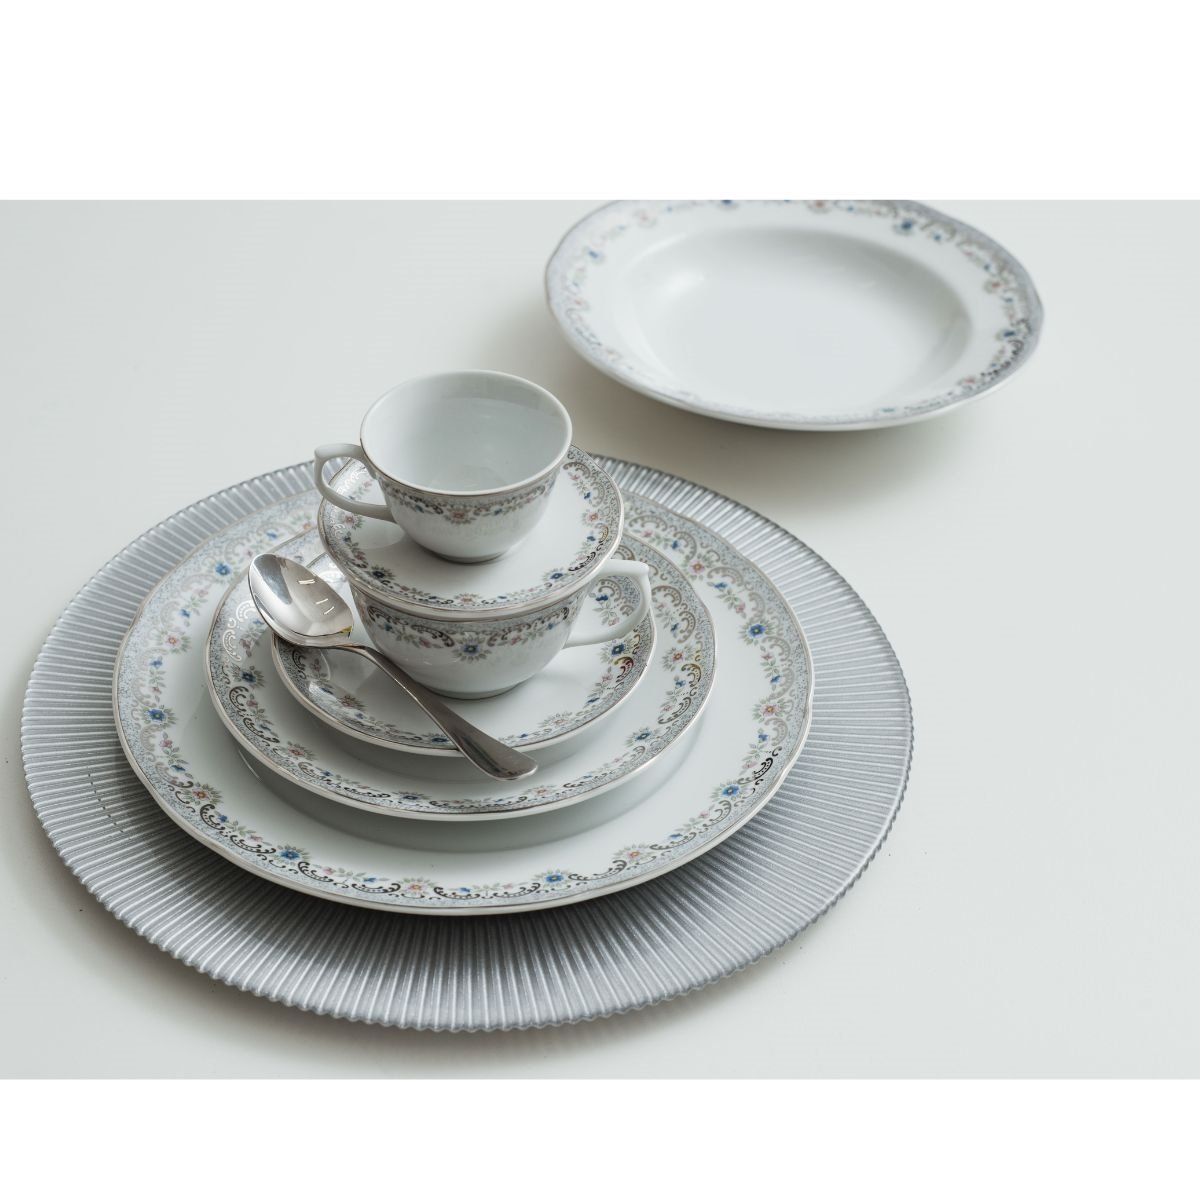 Aparelho de Chá e Café Porcelana Schmidt 53 peças - Dec. Saint Germain 2210  - SCHMIDT